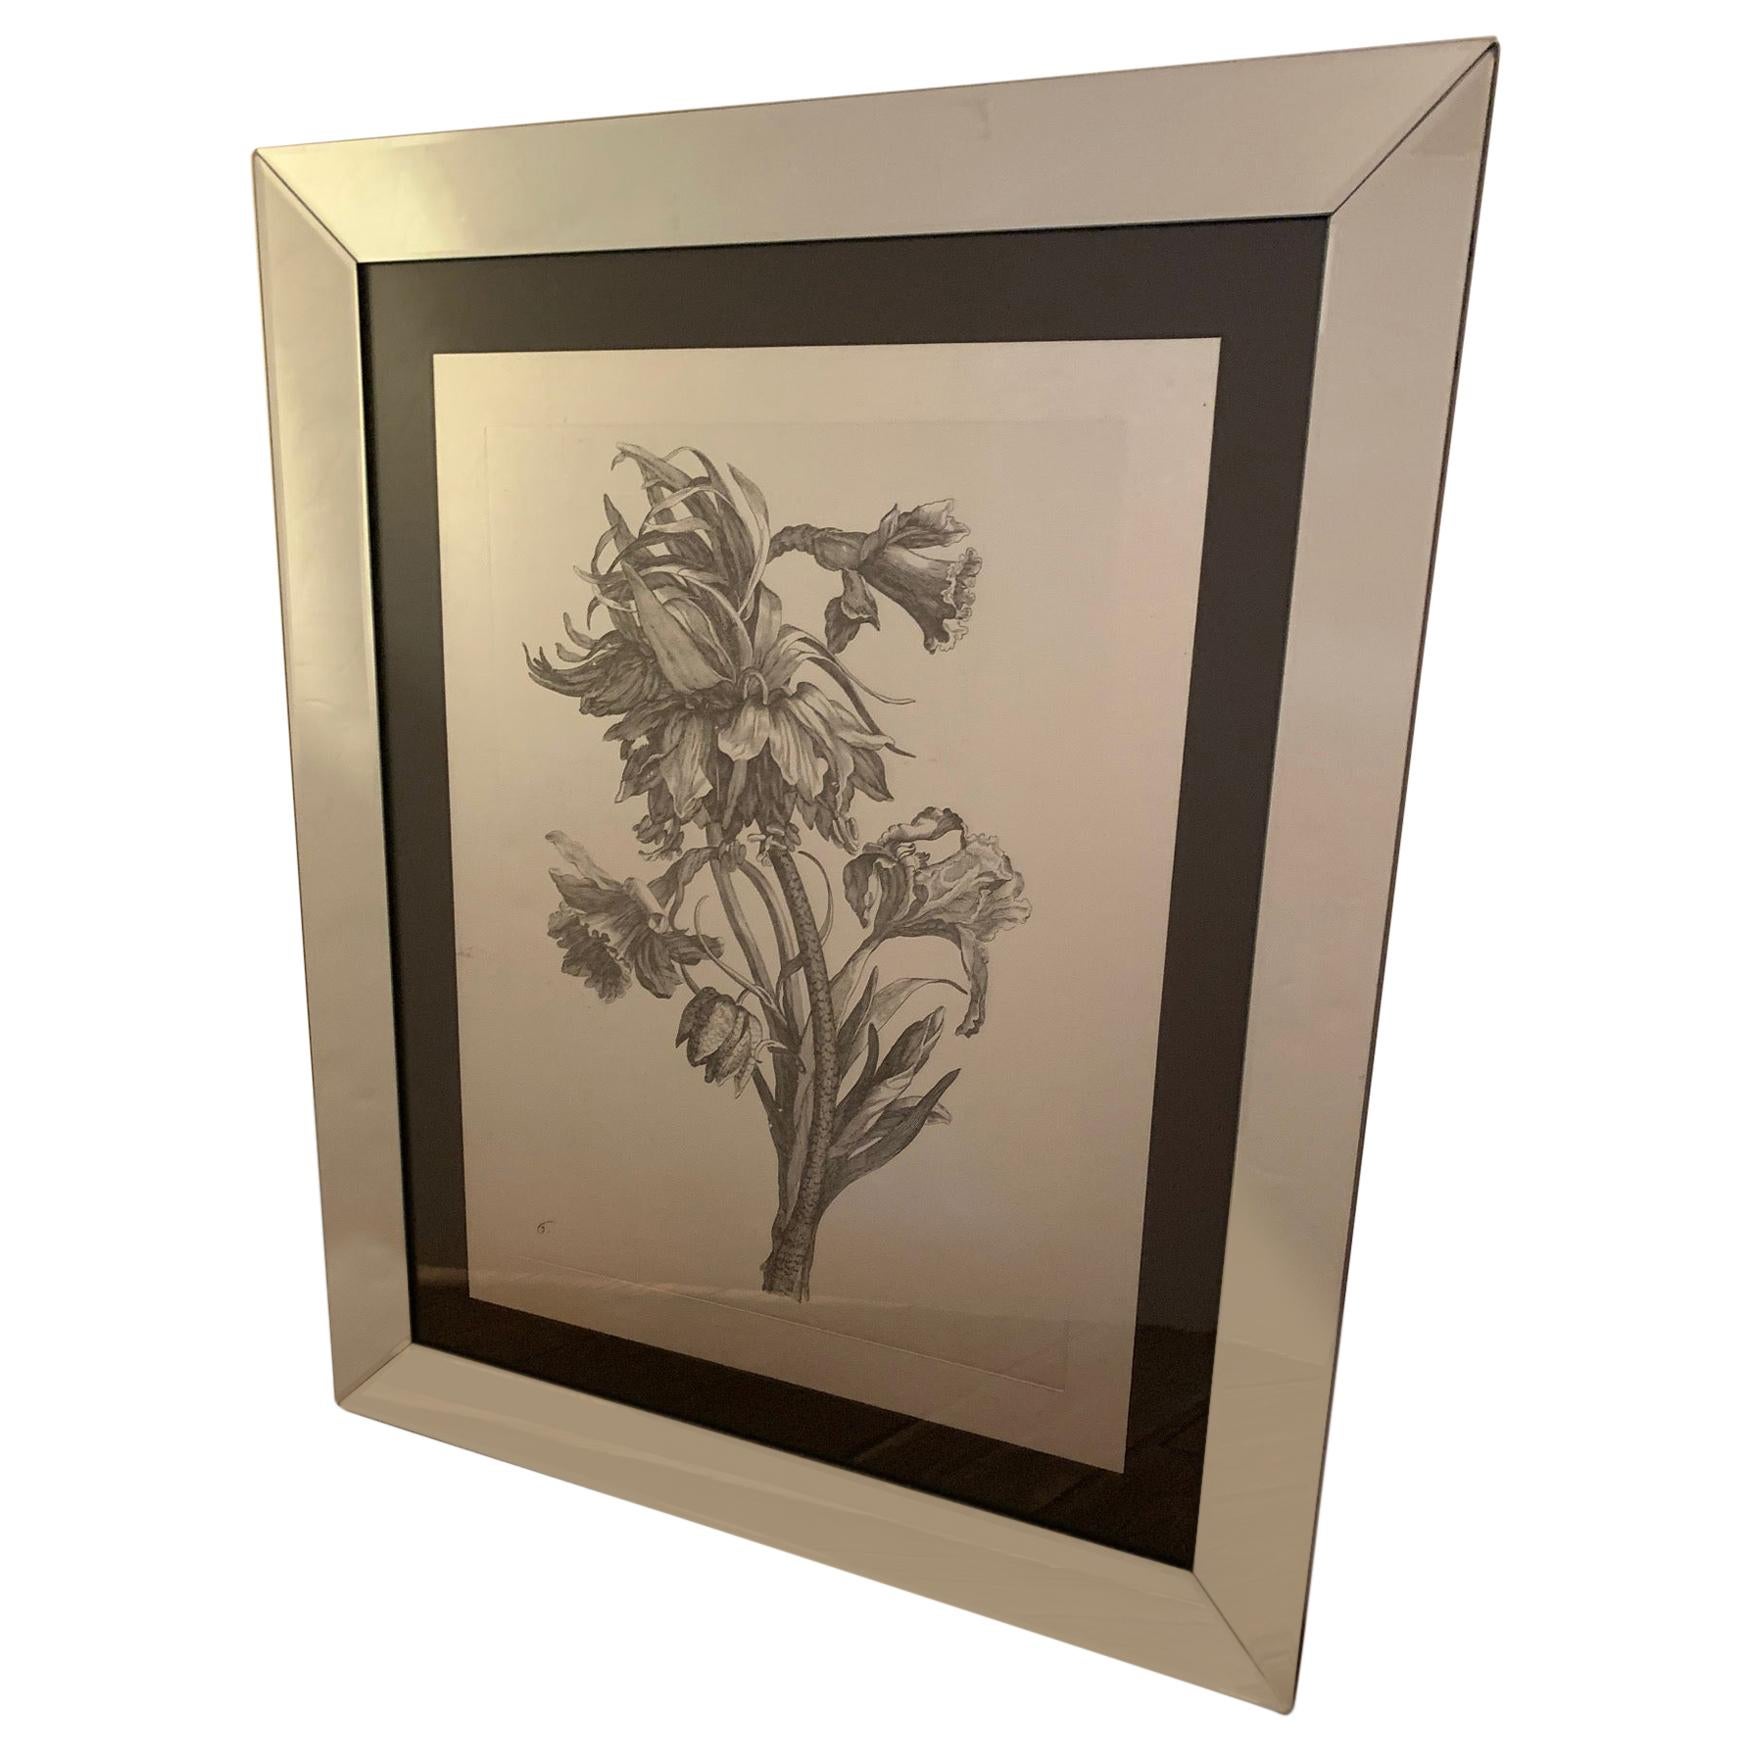 Striking Botanical Drawing Print in Flashy Mirrored Frame